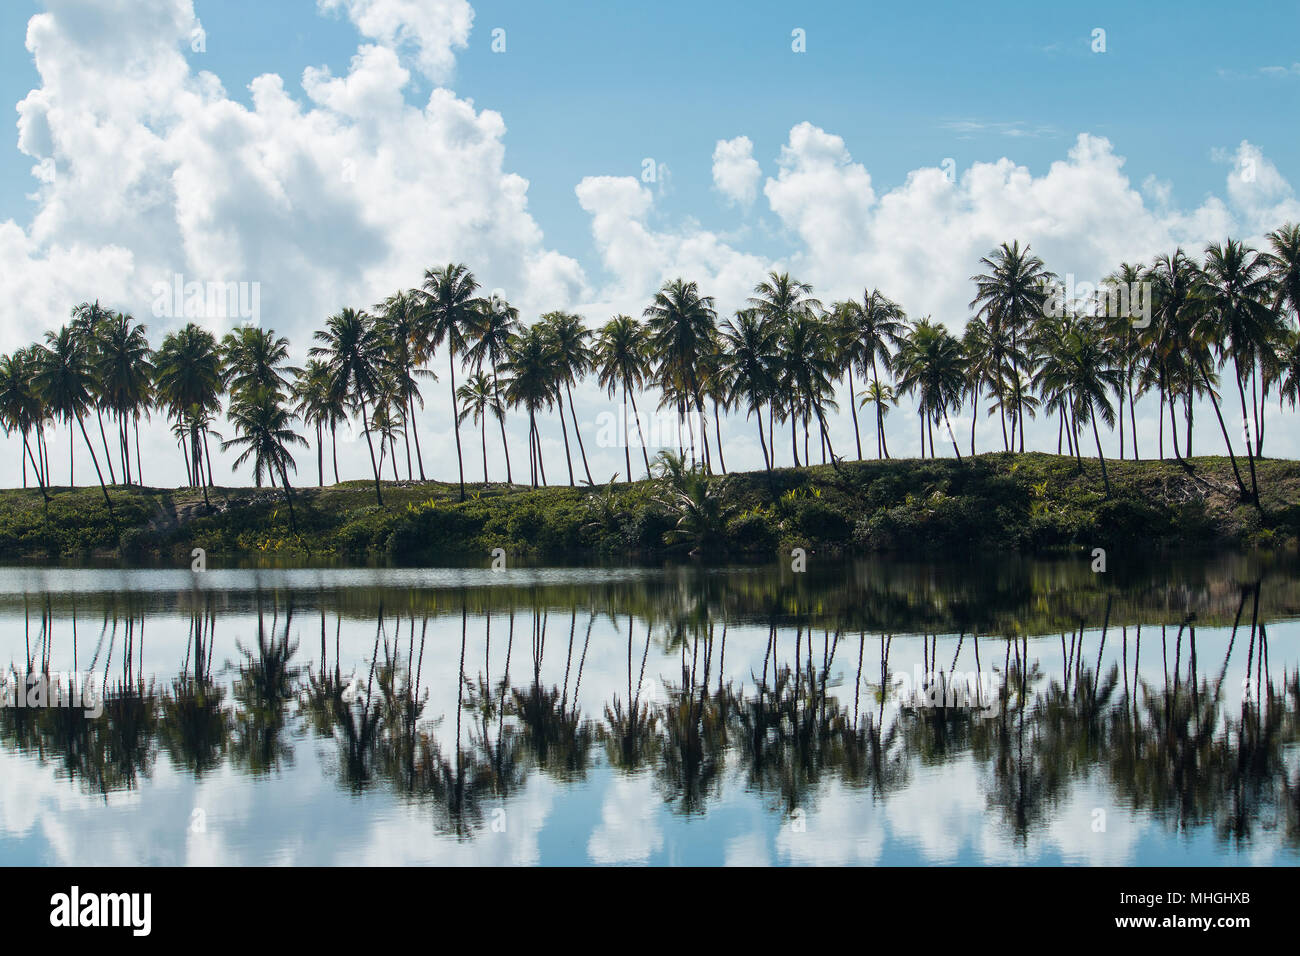 Kokosnussbäume mit Spiegelung im Wasserspiegel des Sees. Tropische Landschaft. Stockfoto